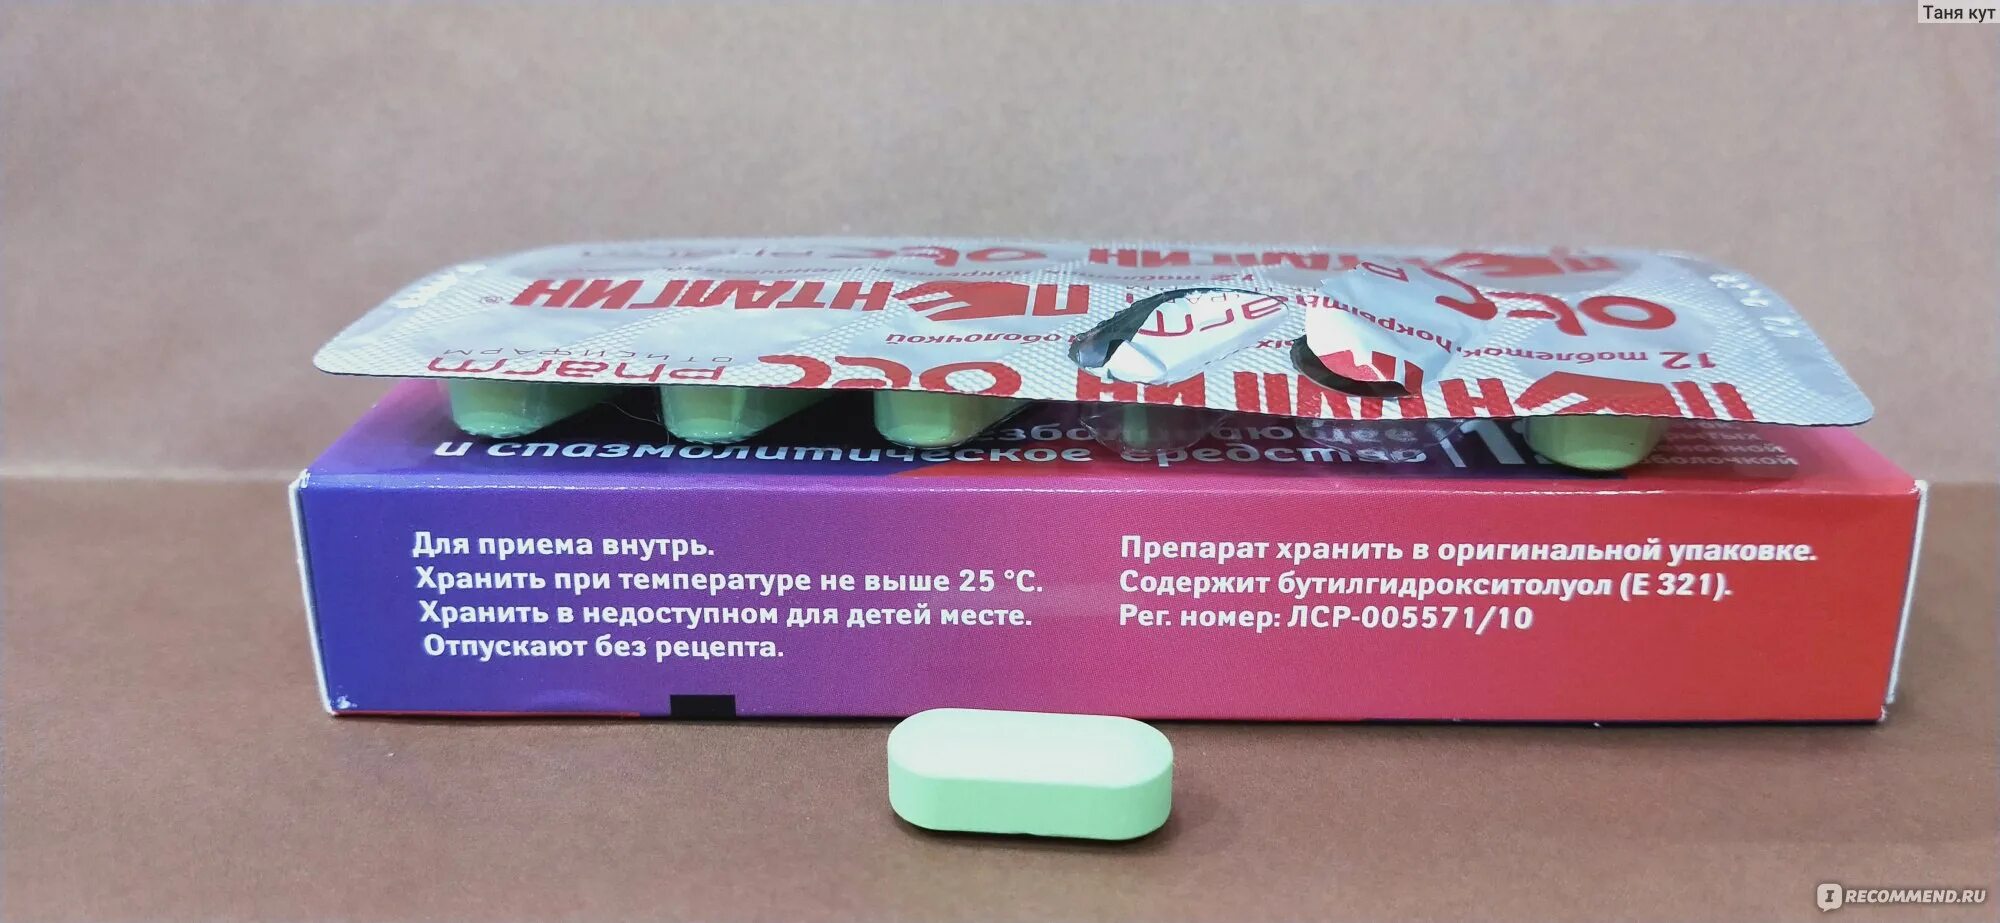 Пенталгин 3 упаковки. Пиразидол таблетки. Пиразидол отзывы. Лекарствоуврство в красной упаковке Пенталгин.